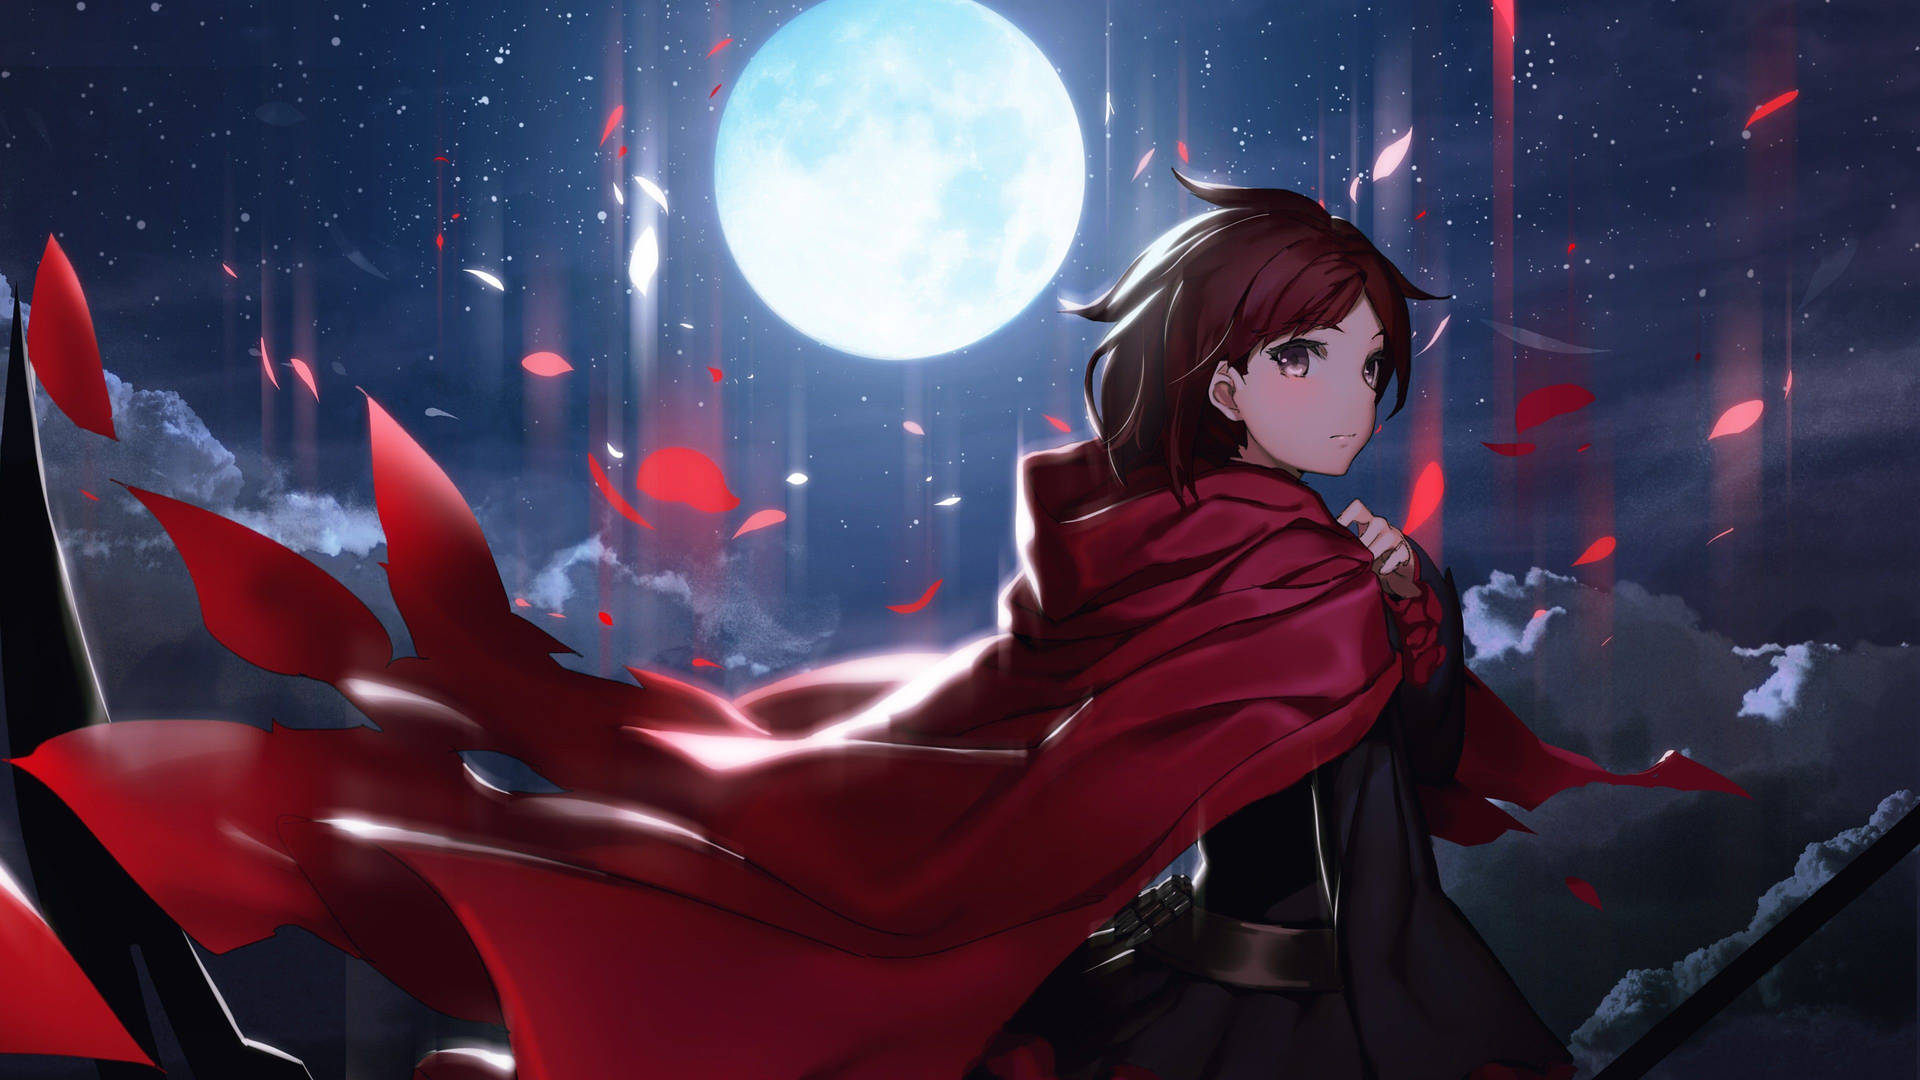 Moon 4k Anime Girl In Red Aesthetic Cape Wallpaper